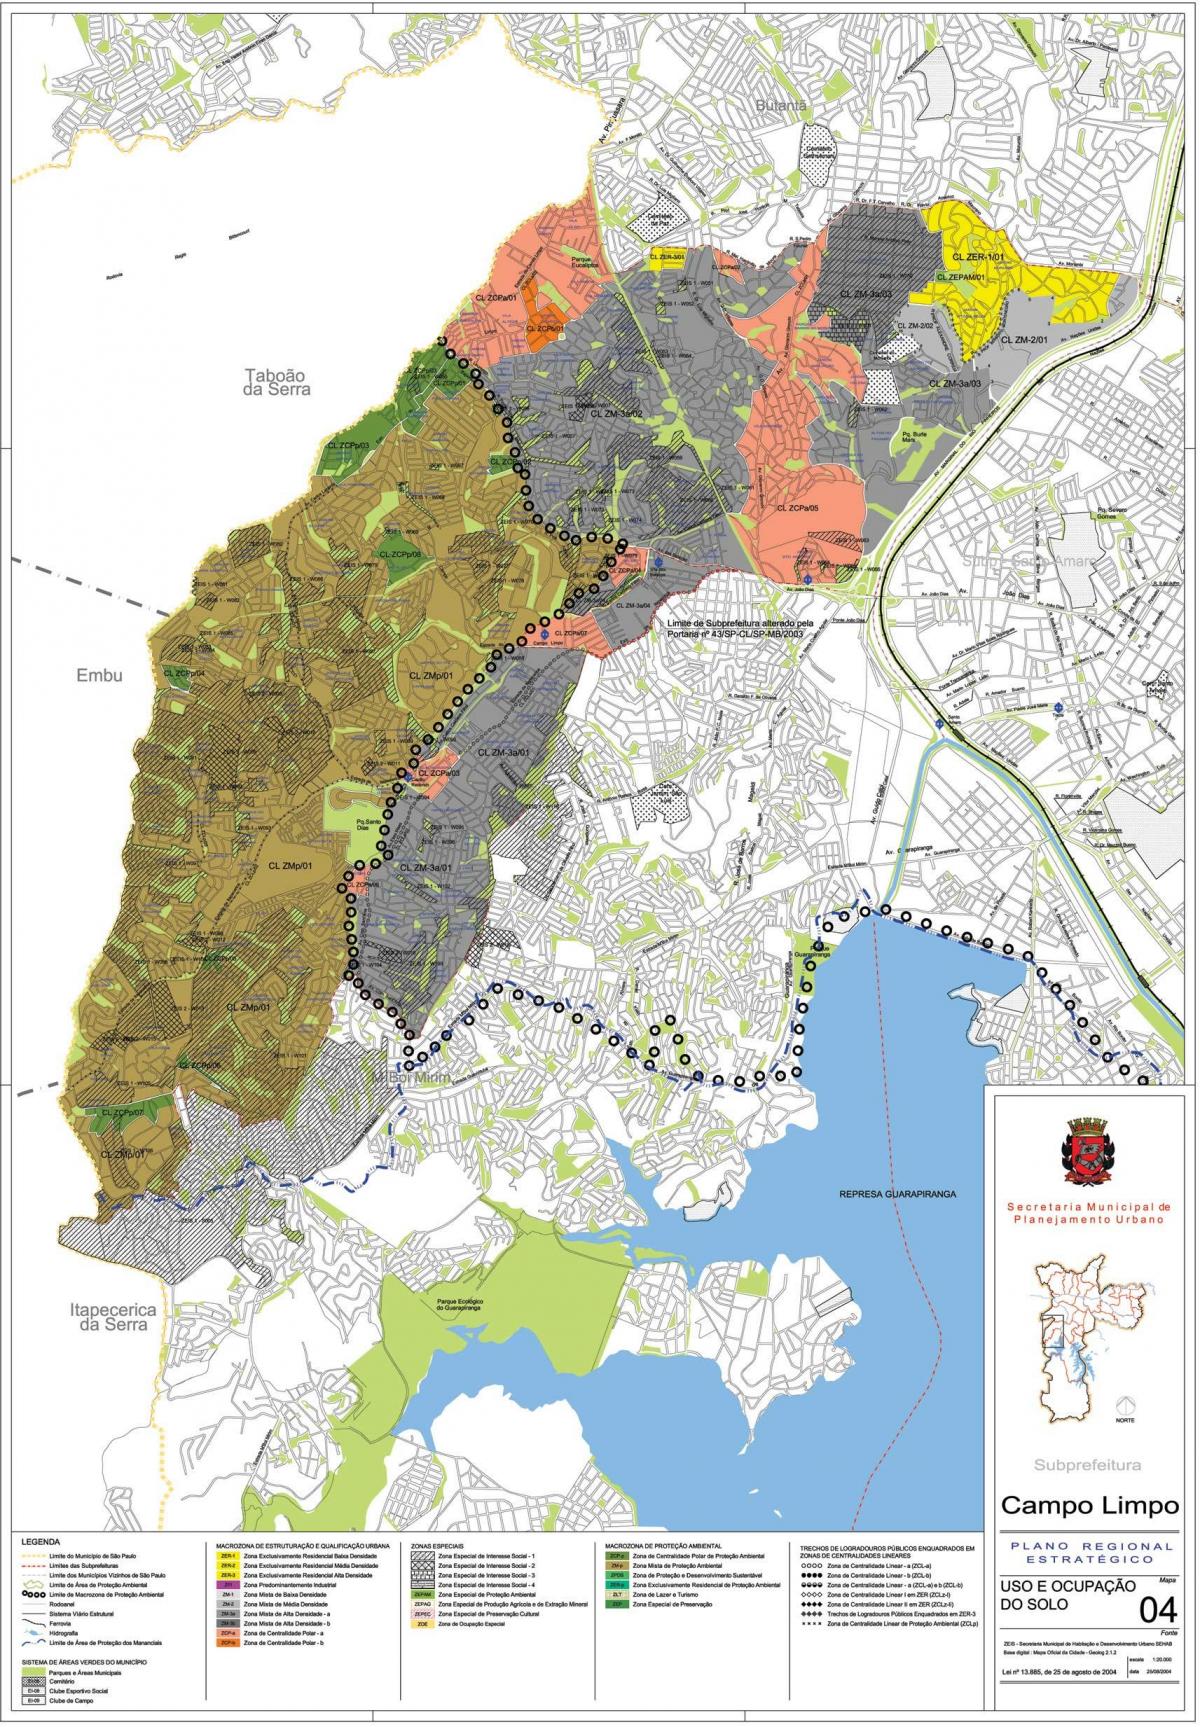 نقشه کمپو لیمپو São Paulo - اشغال خاک